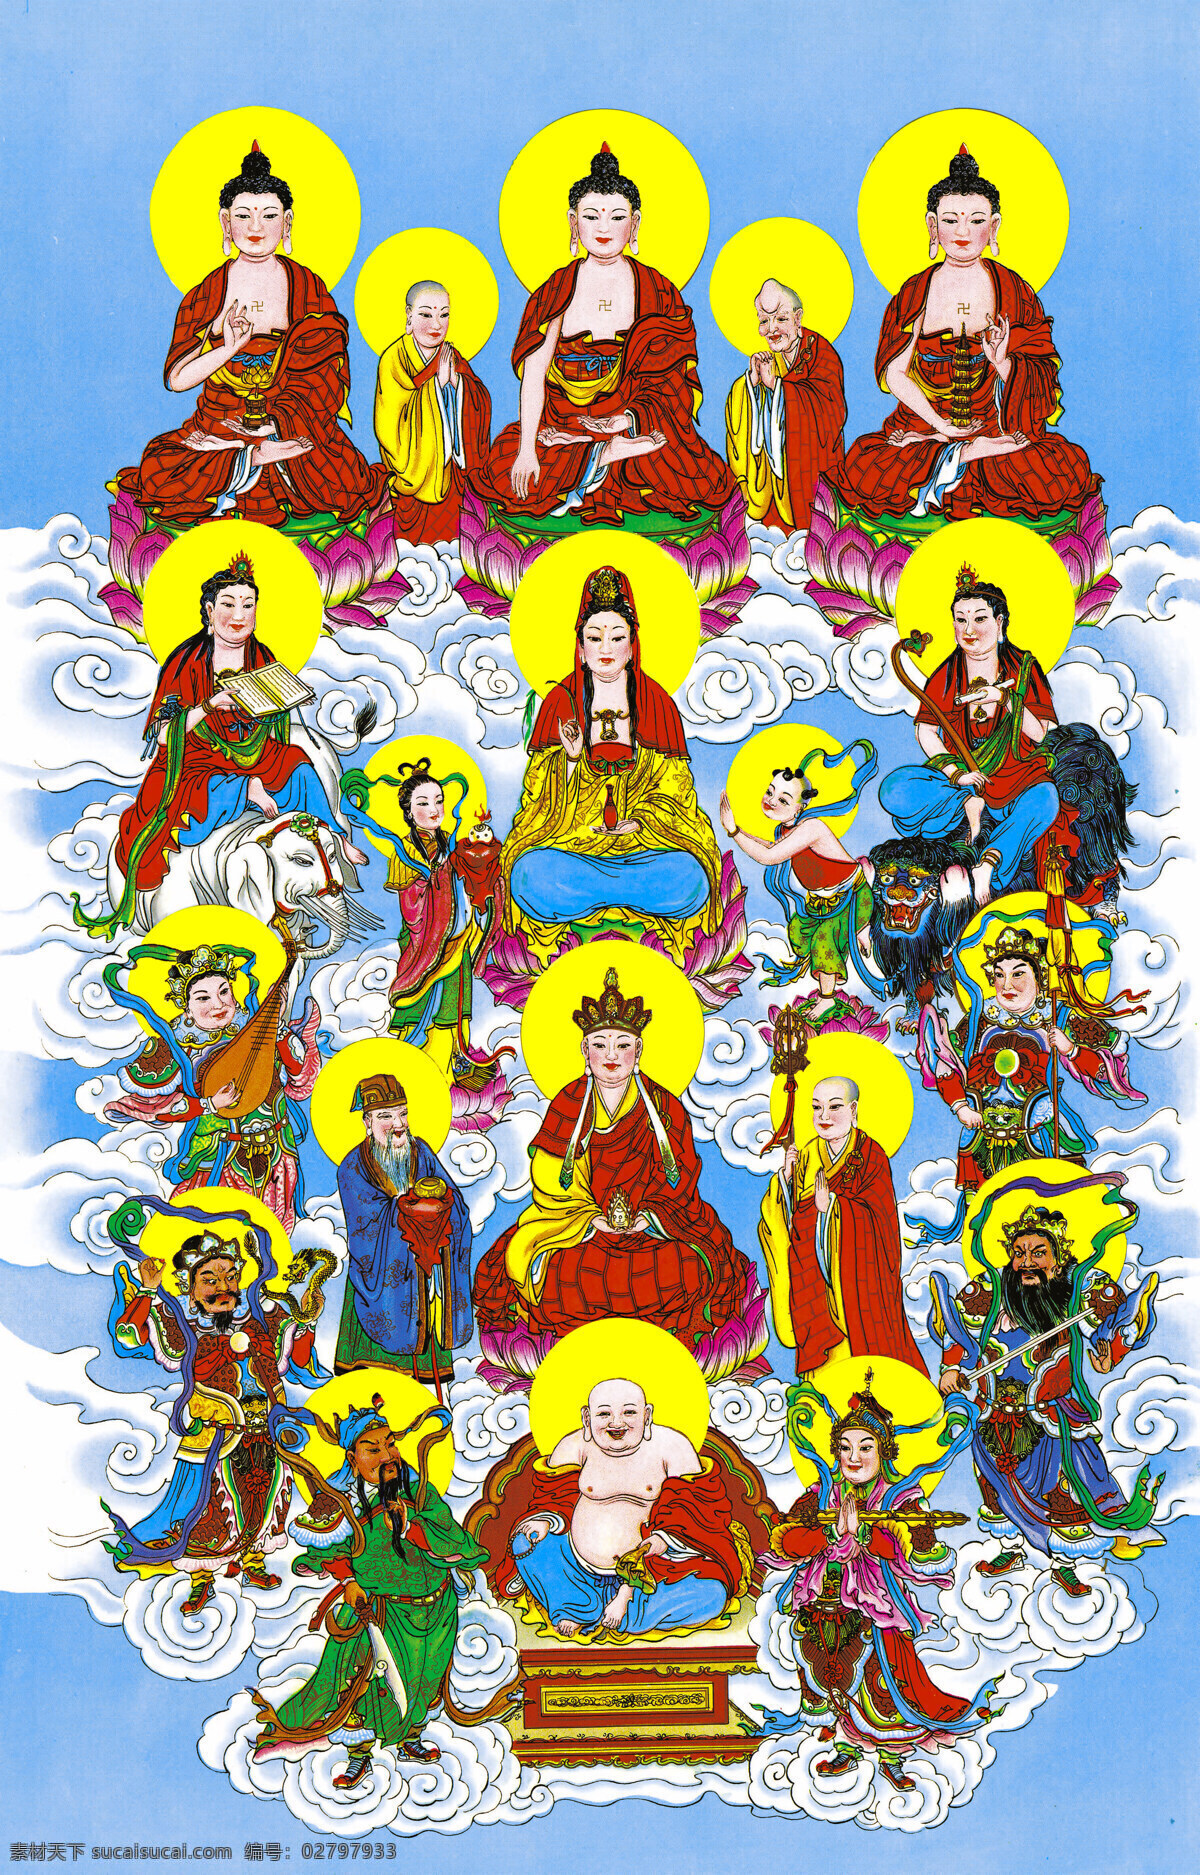 佛教十八神佛 佛教 文化艺术 菩萨 宗教信仰 十八神佛 众佛像 观音菩萨 弥勒佛 财神爷 神仙 设计图库